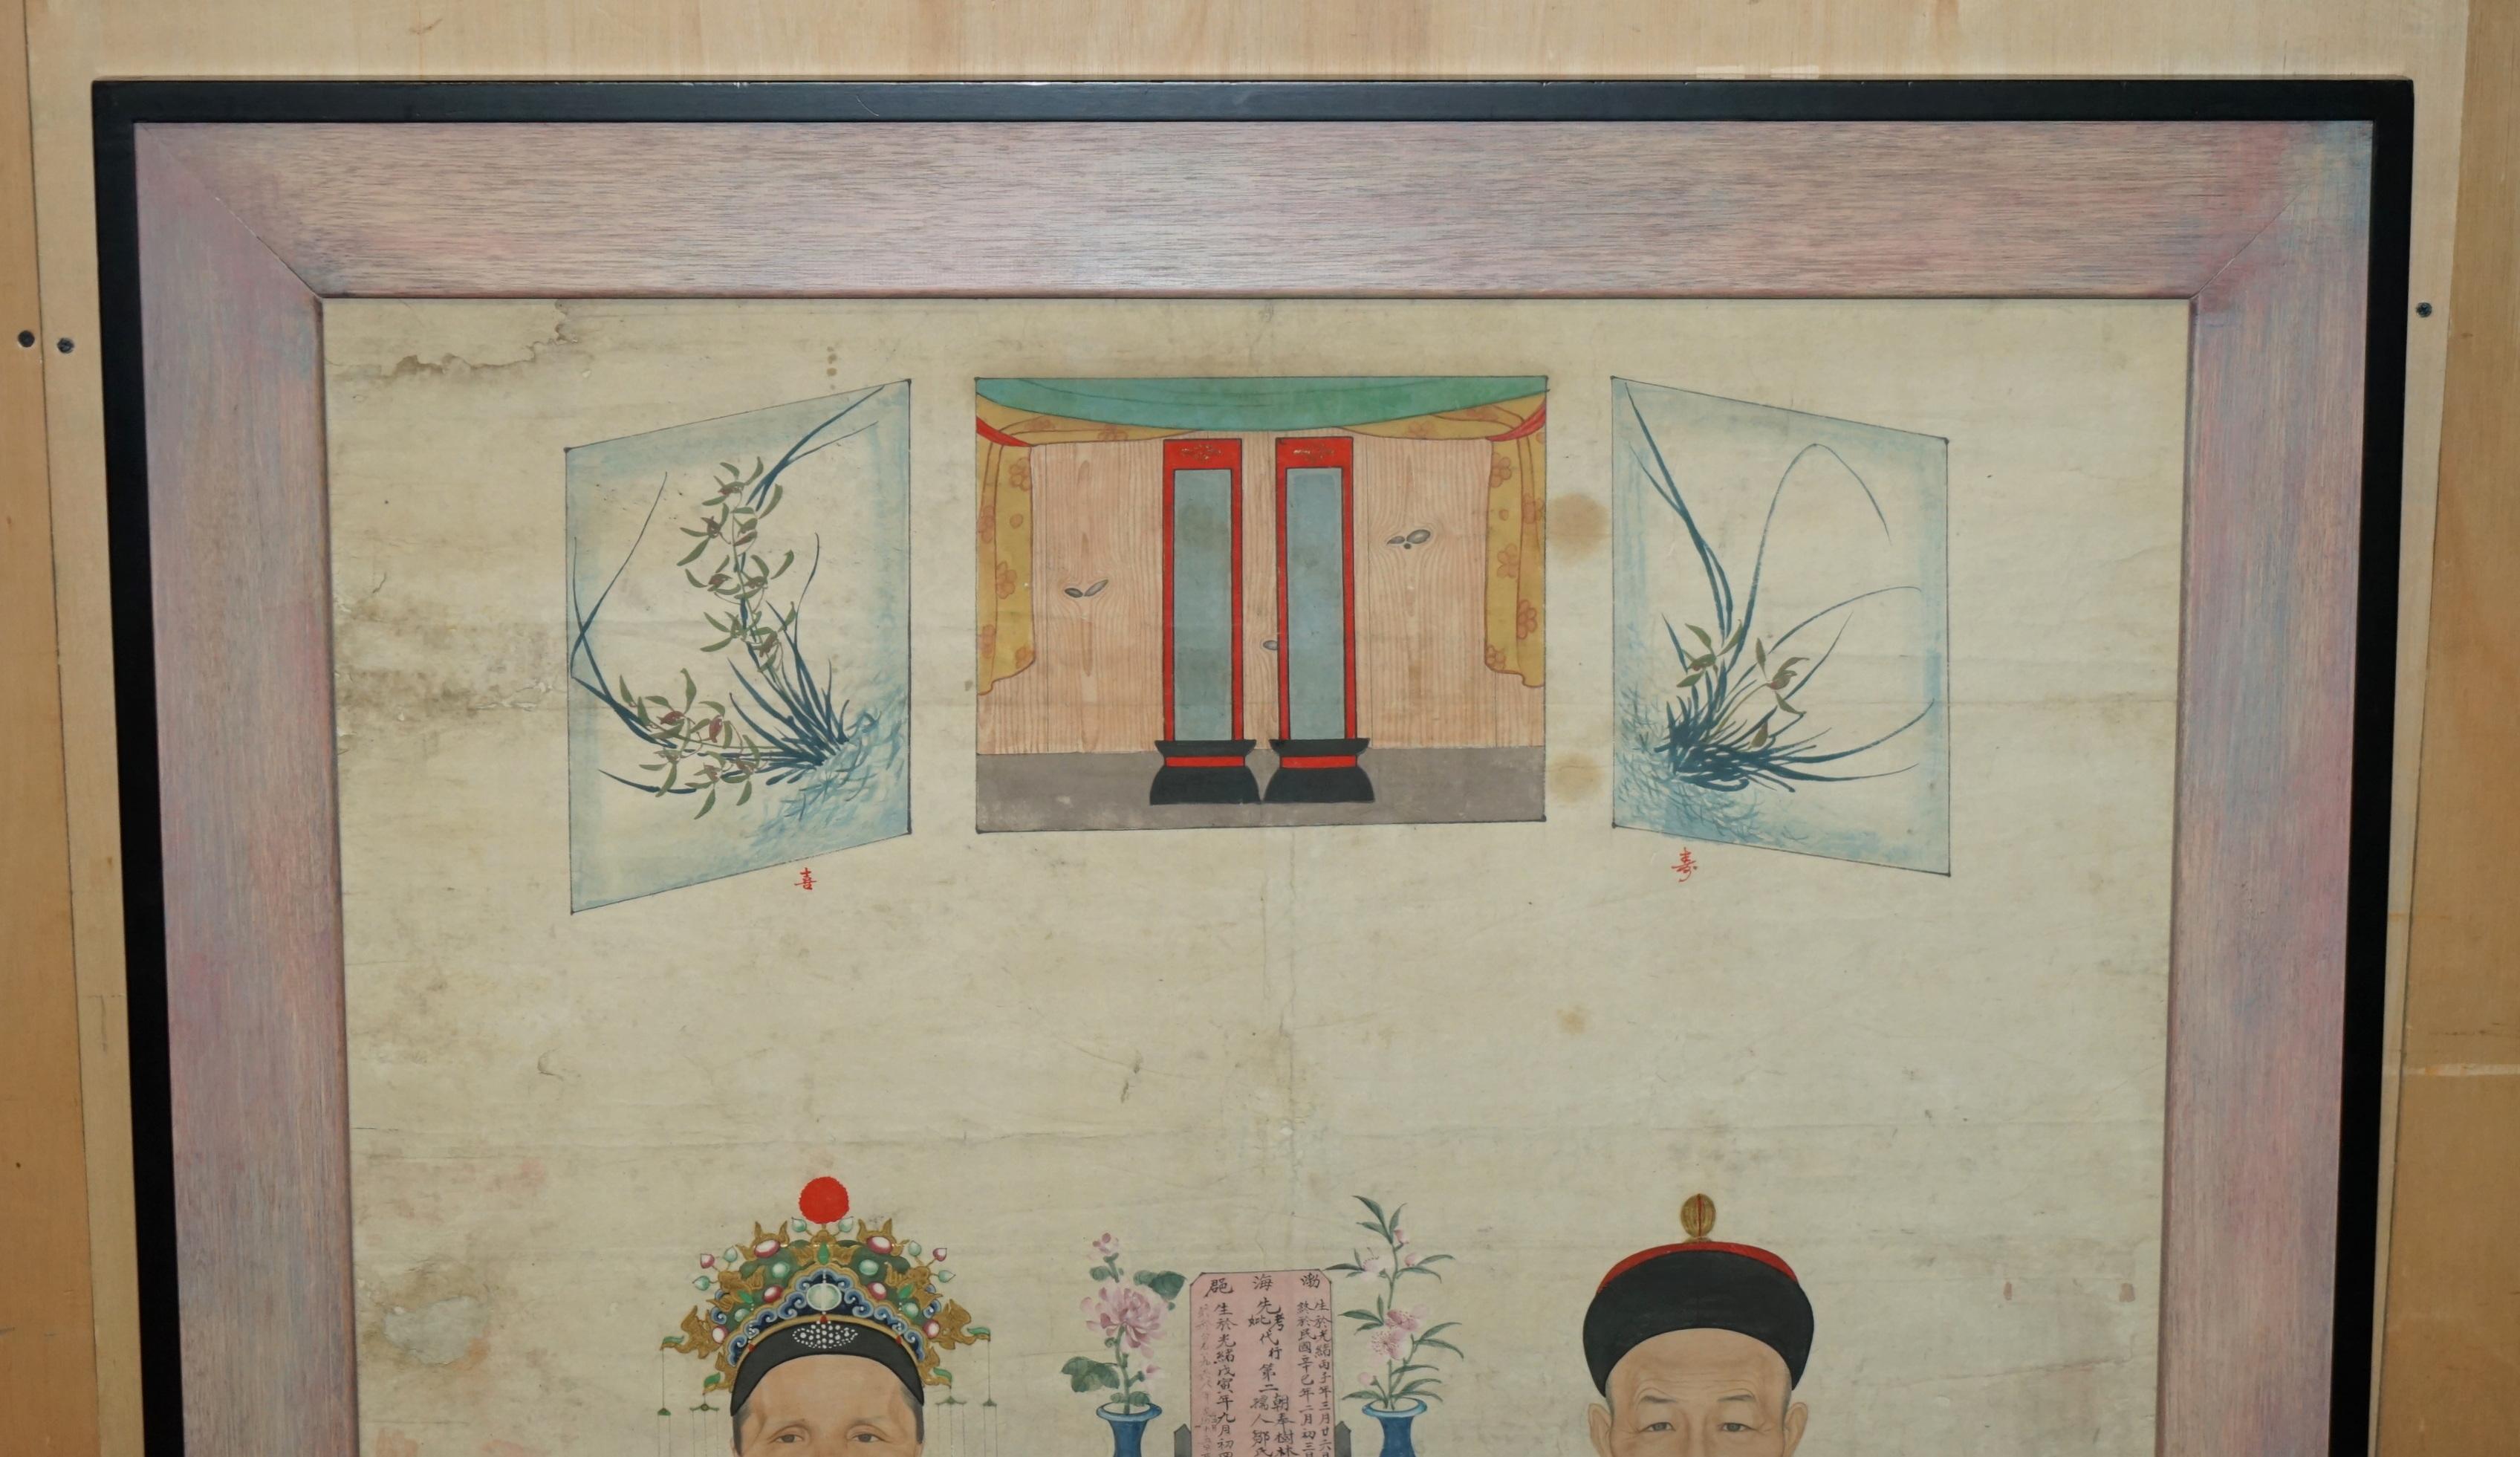 Royal House Antiques

Royal House Antiques freut sich, dieses schöne antike chinesische Ahnenporträt auf dem Originalpapier mit einem schönen verglasten Rahmen zum Verkauf anzubieten

Bitte beachten Sie die Lieferkosten aufgeführt ist nur ein